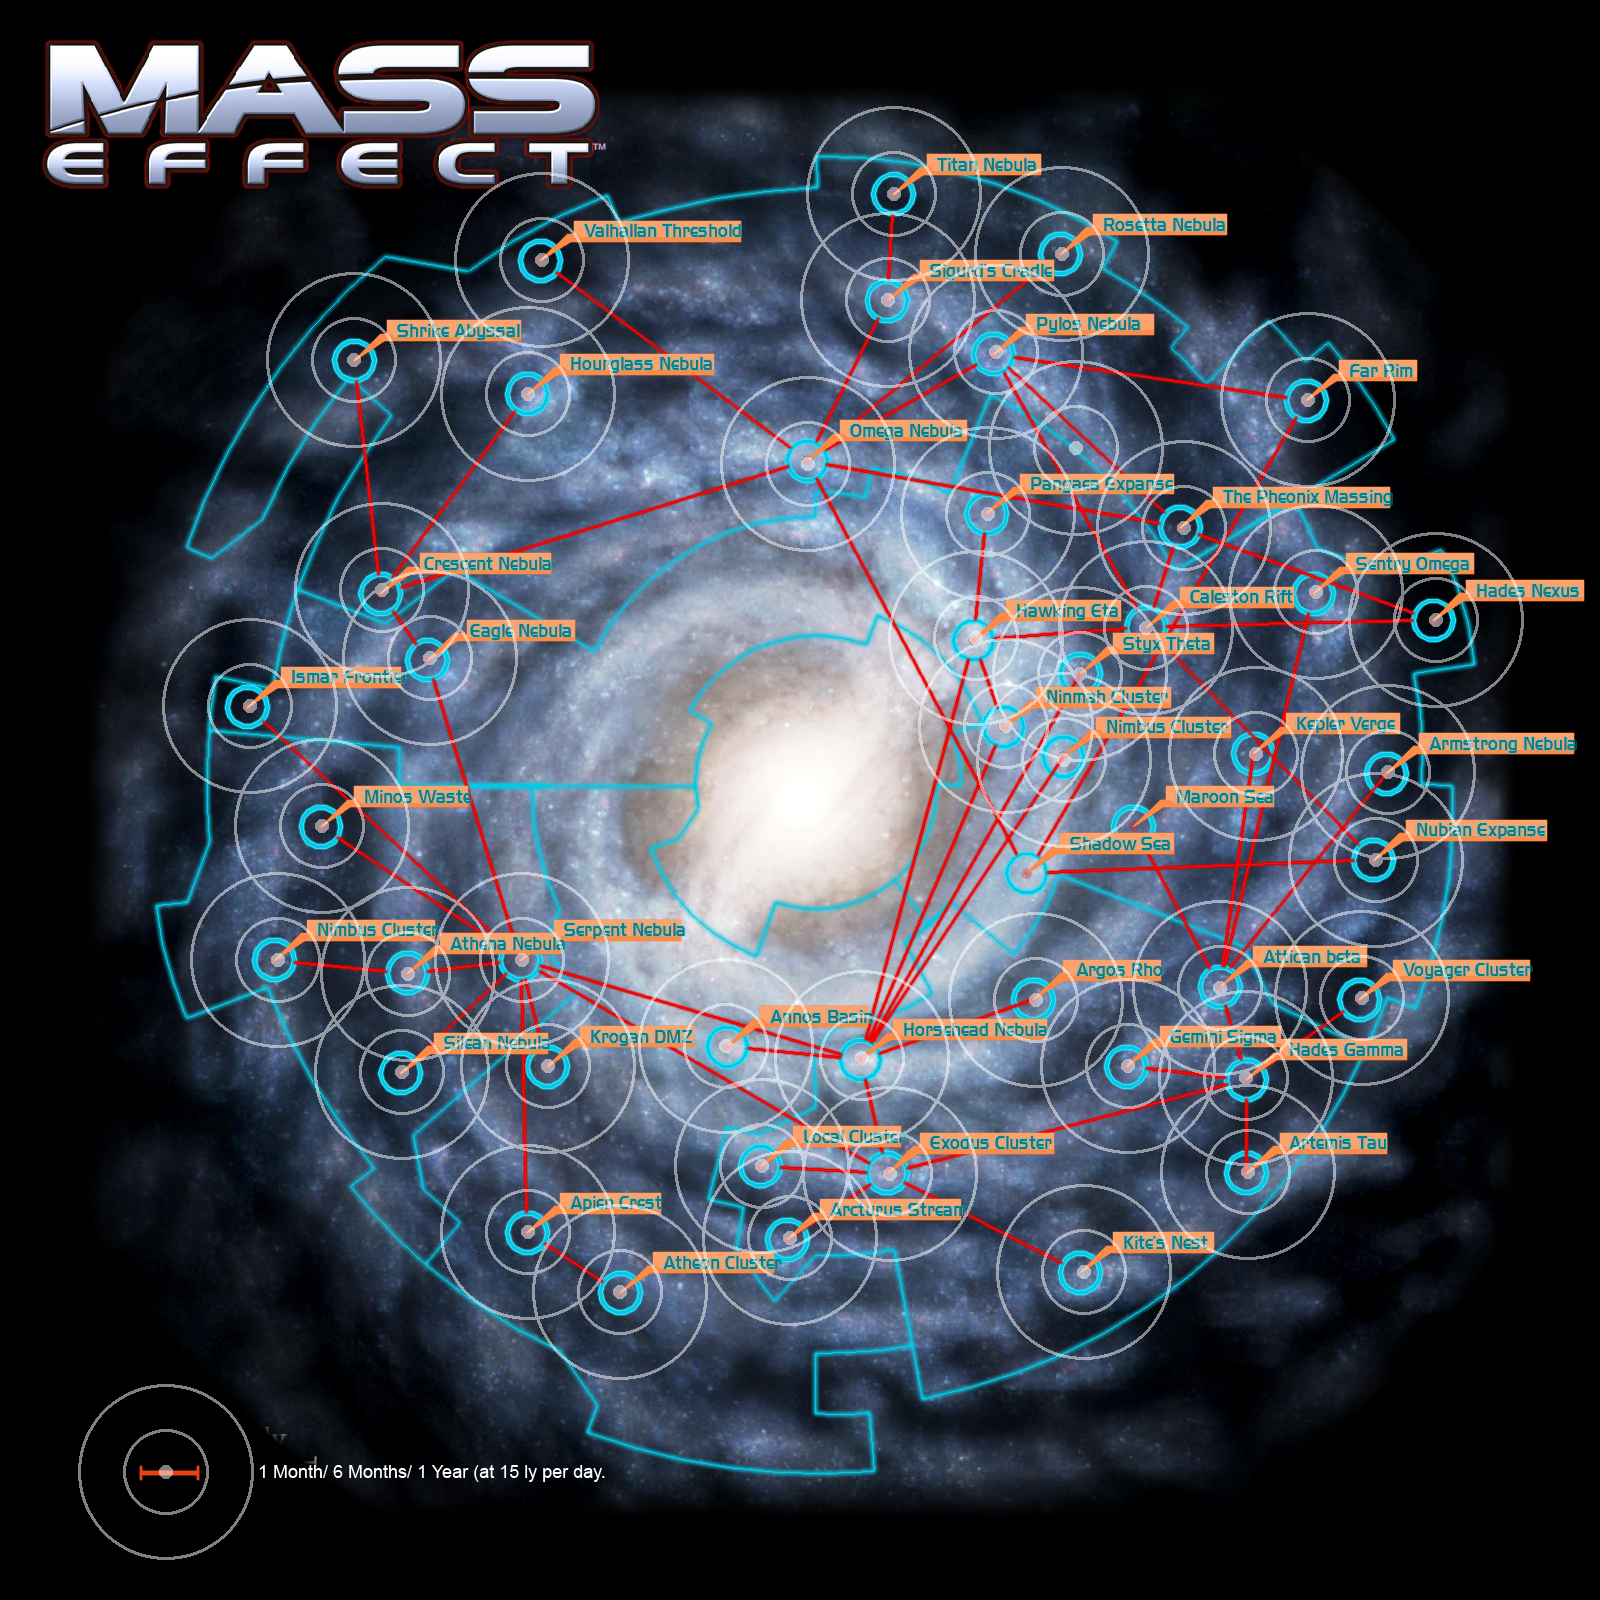 alisa costello reccomend Mass Effect Blue Star 3